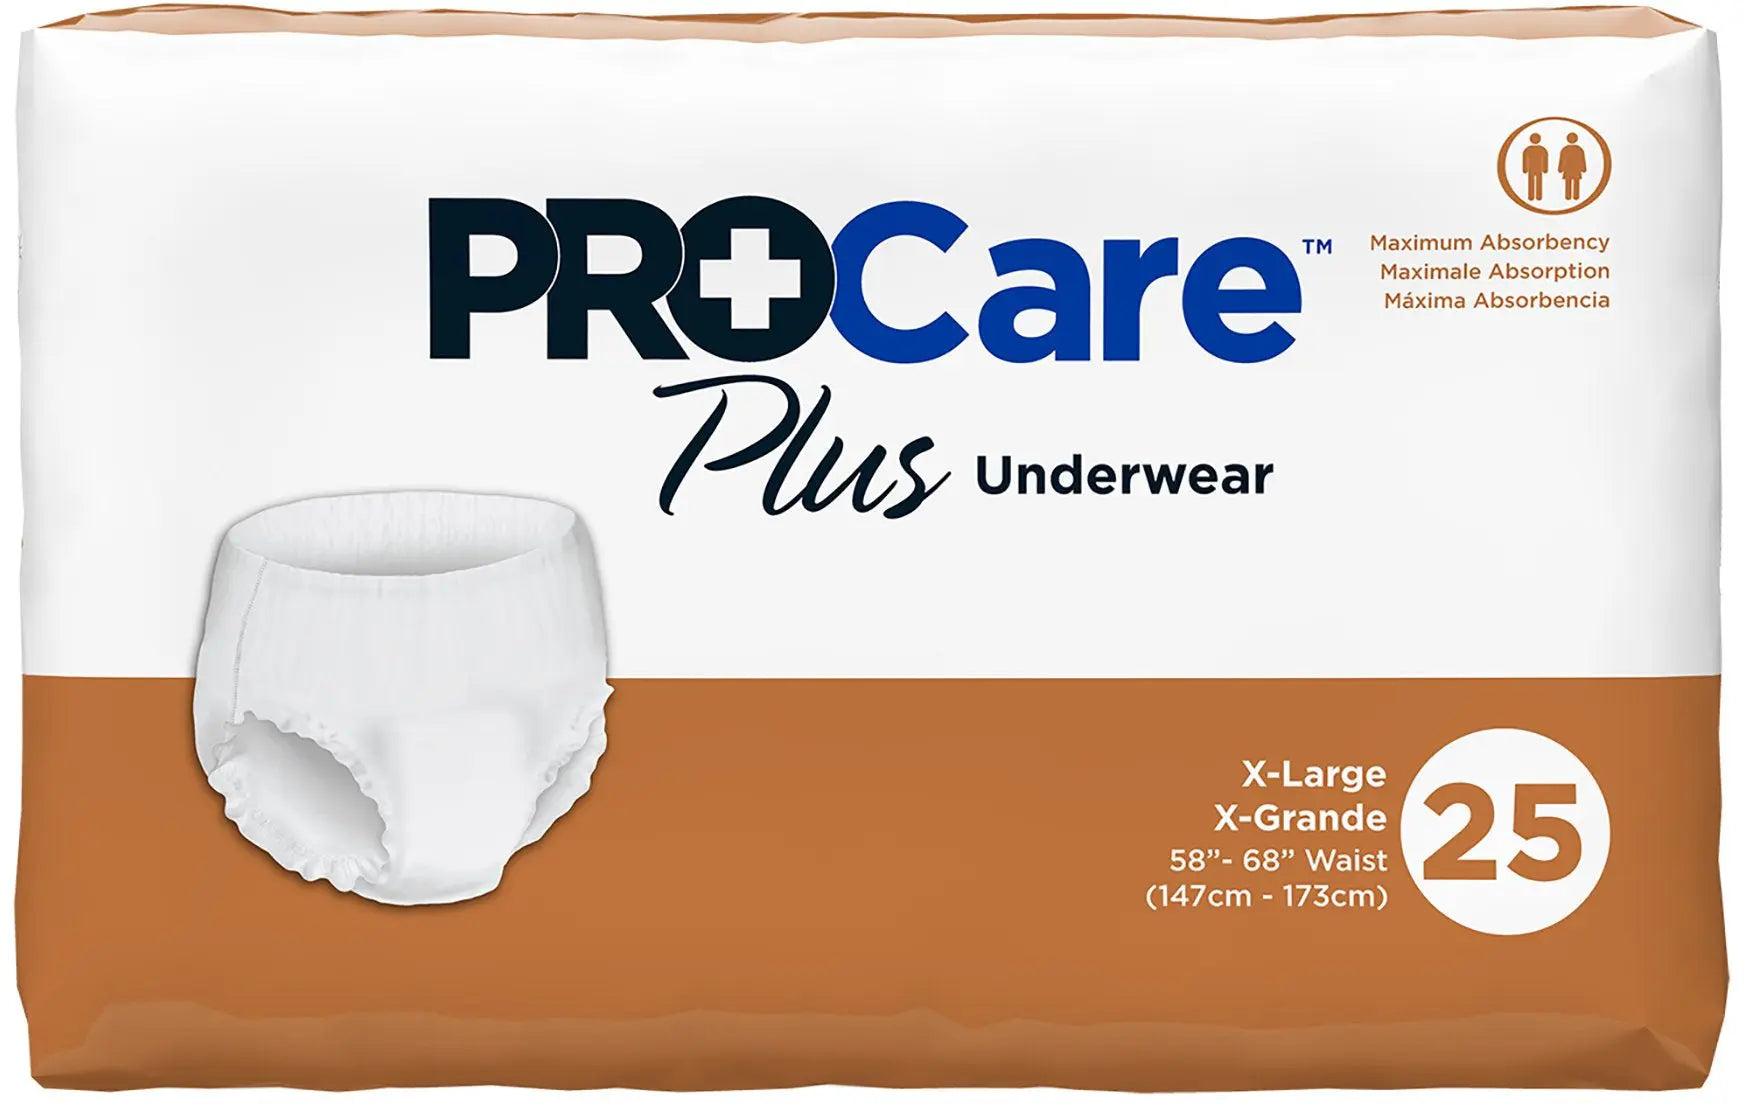 PROCARE Plus Underwear #large 25pcs (New)